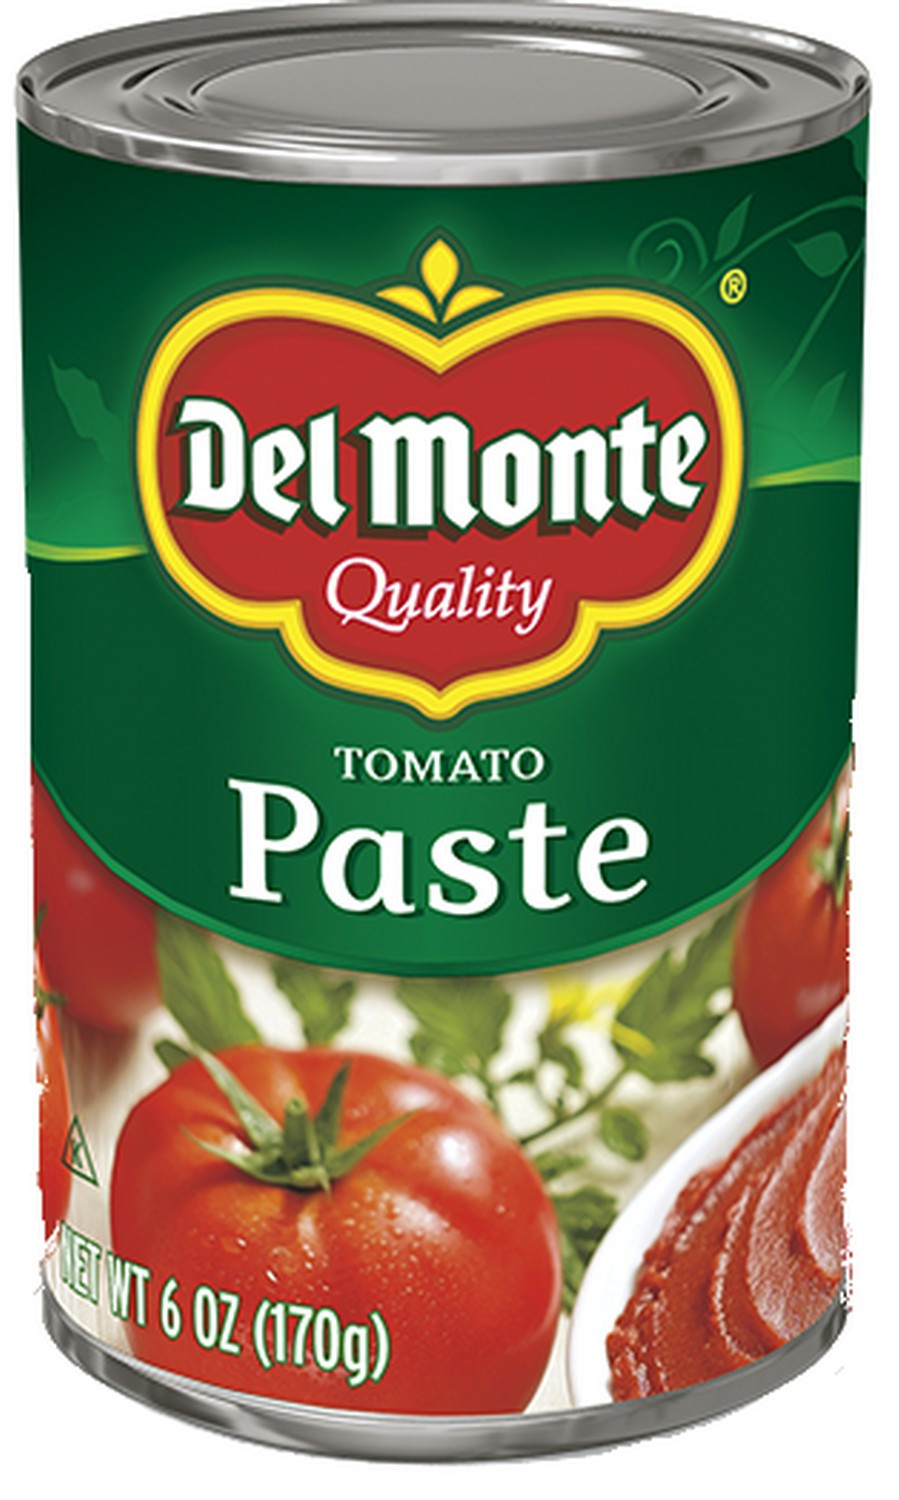 Tomato Sauce From Tomato Paste
 tomato paste ingre nts